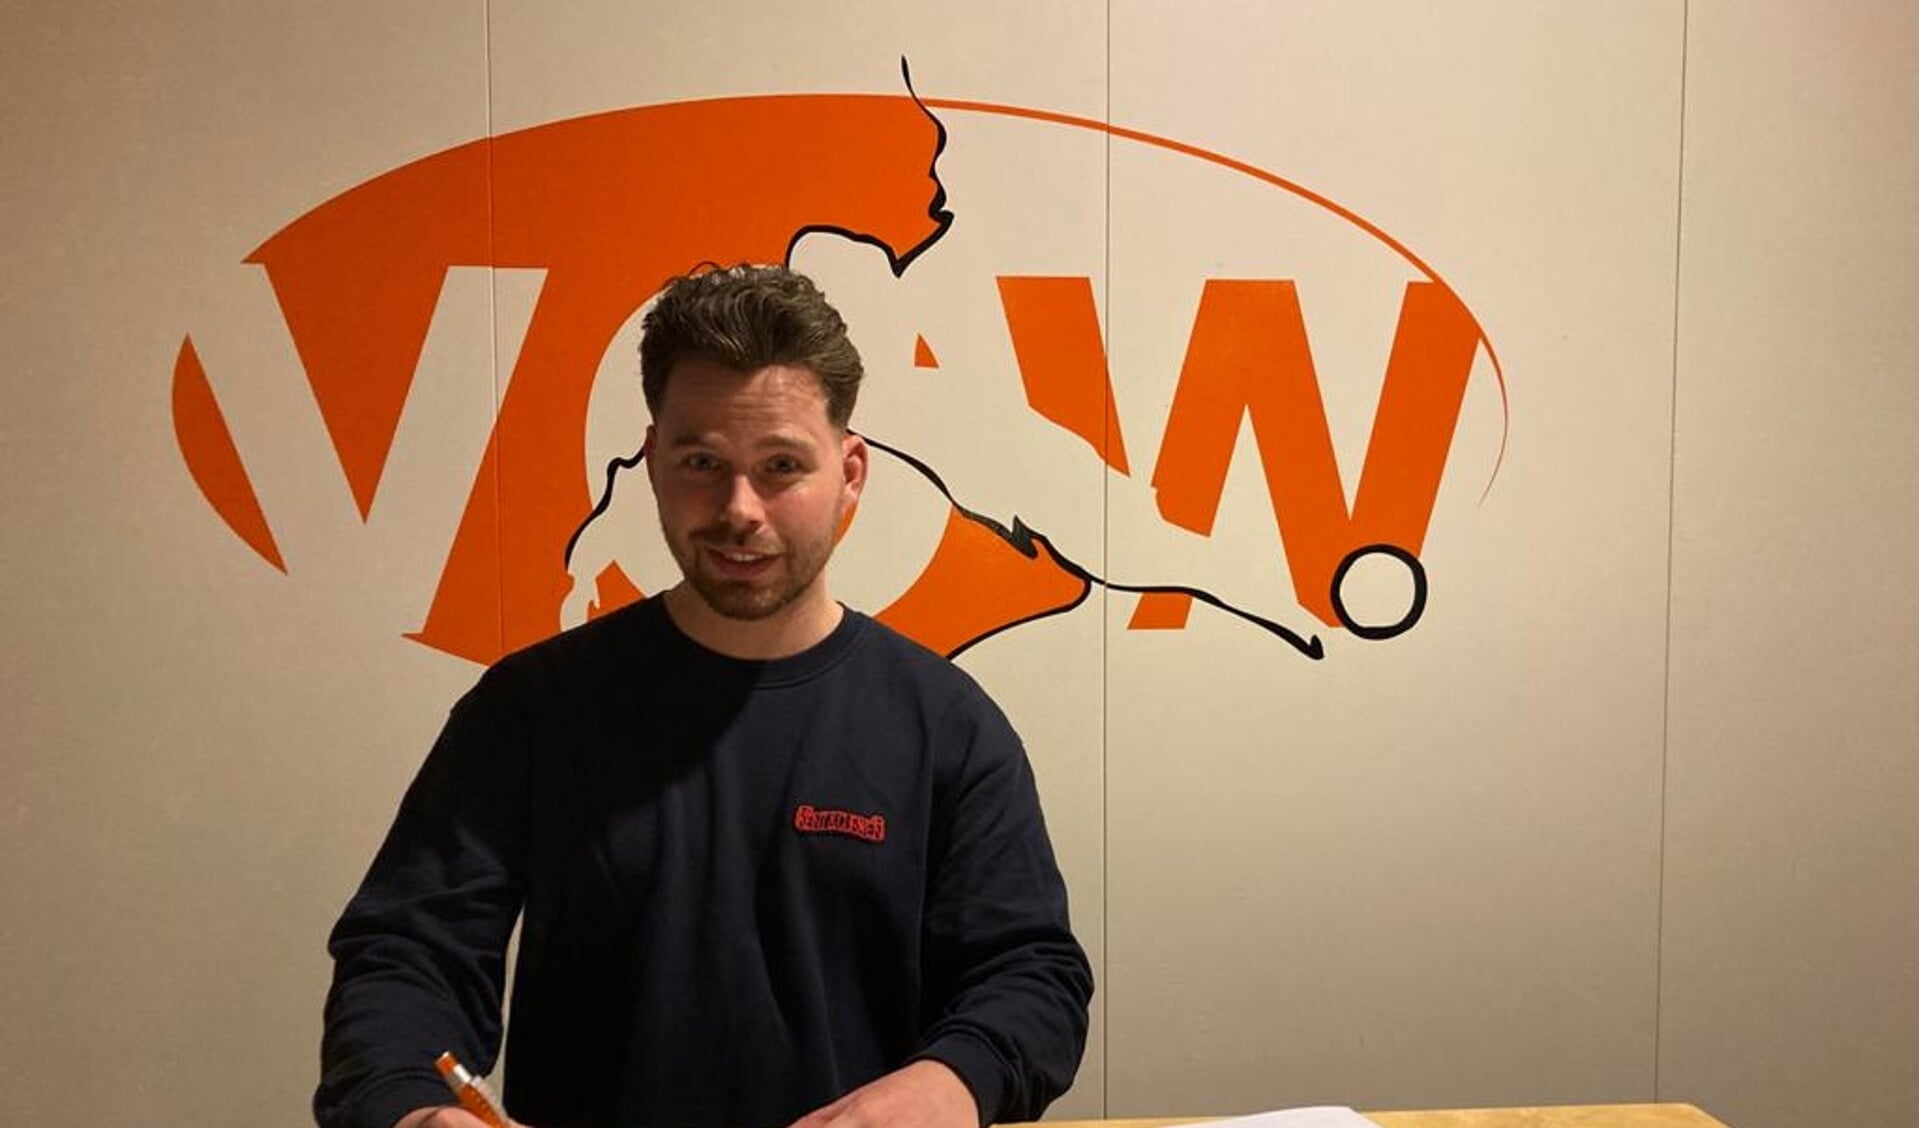 Patrick Cissen tekent contract als trainer van VOW. (Bron: website VOW)